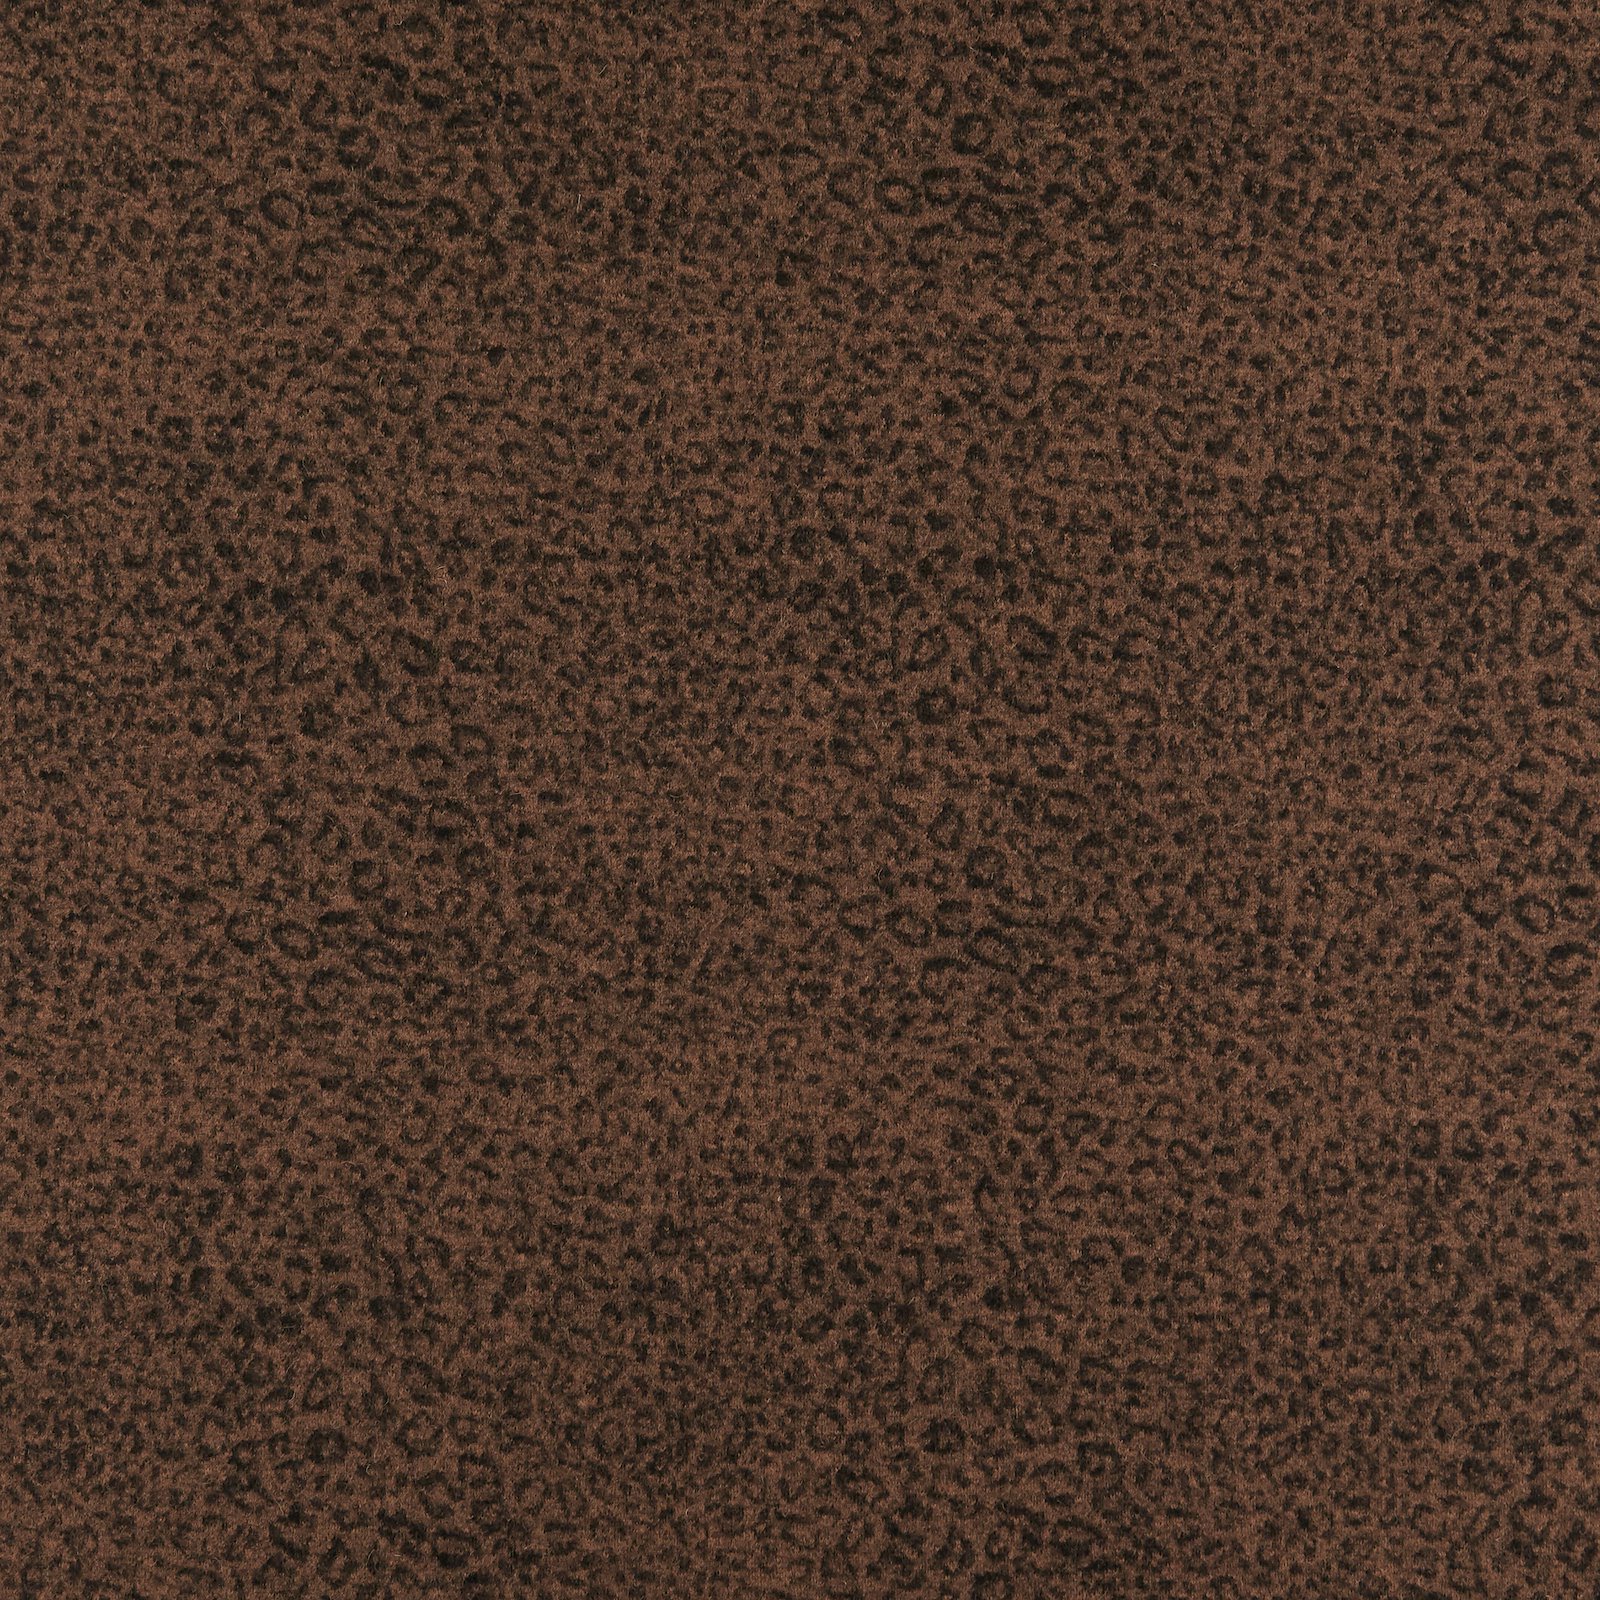 Wool felt brown with black leo print 310427_pack_sp